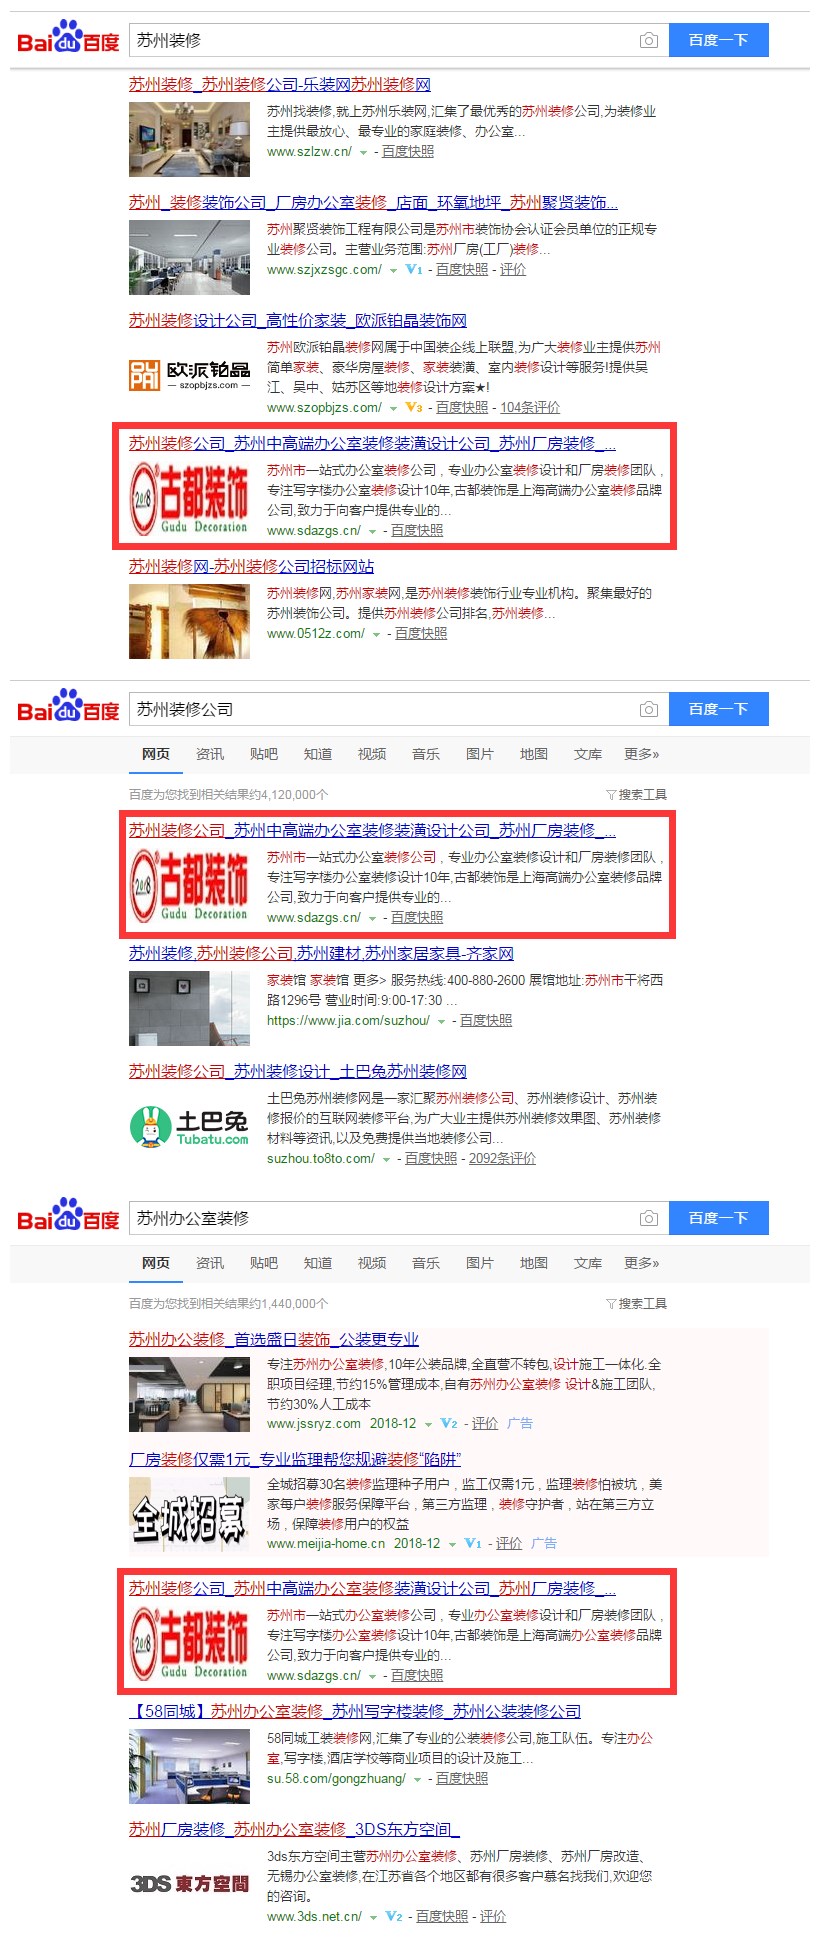 贵州网站运营公司：古都装饰苏州公司网站（www.sdazgs.cn）(图3)